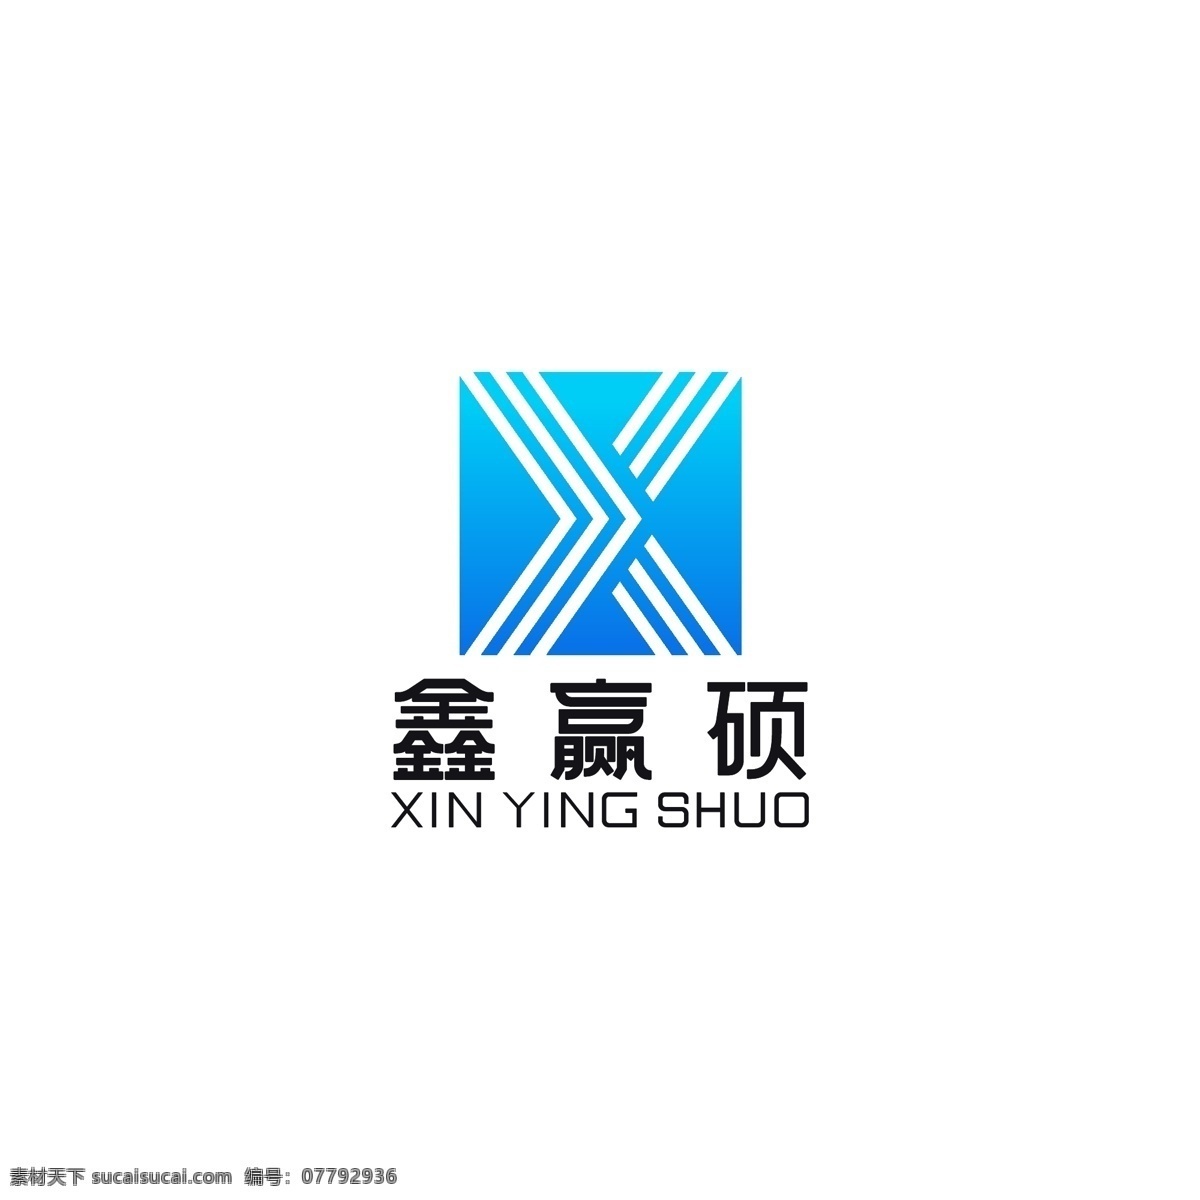 鑫 赢 硕 logo 标志 科技 xlogo logo设计